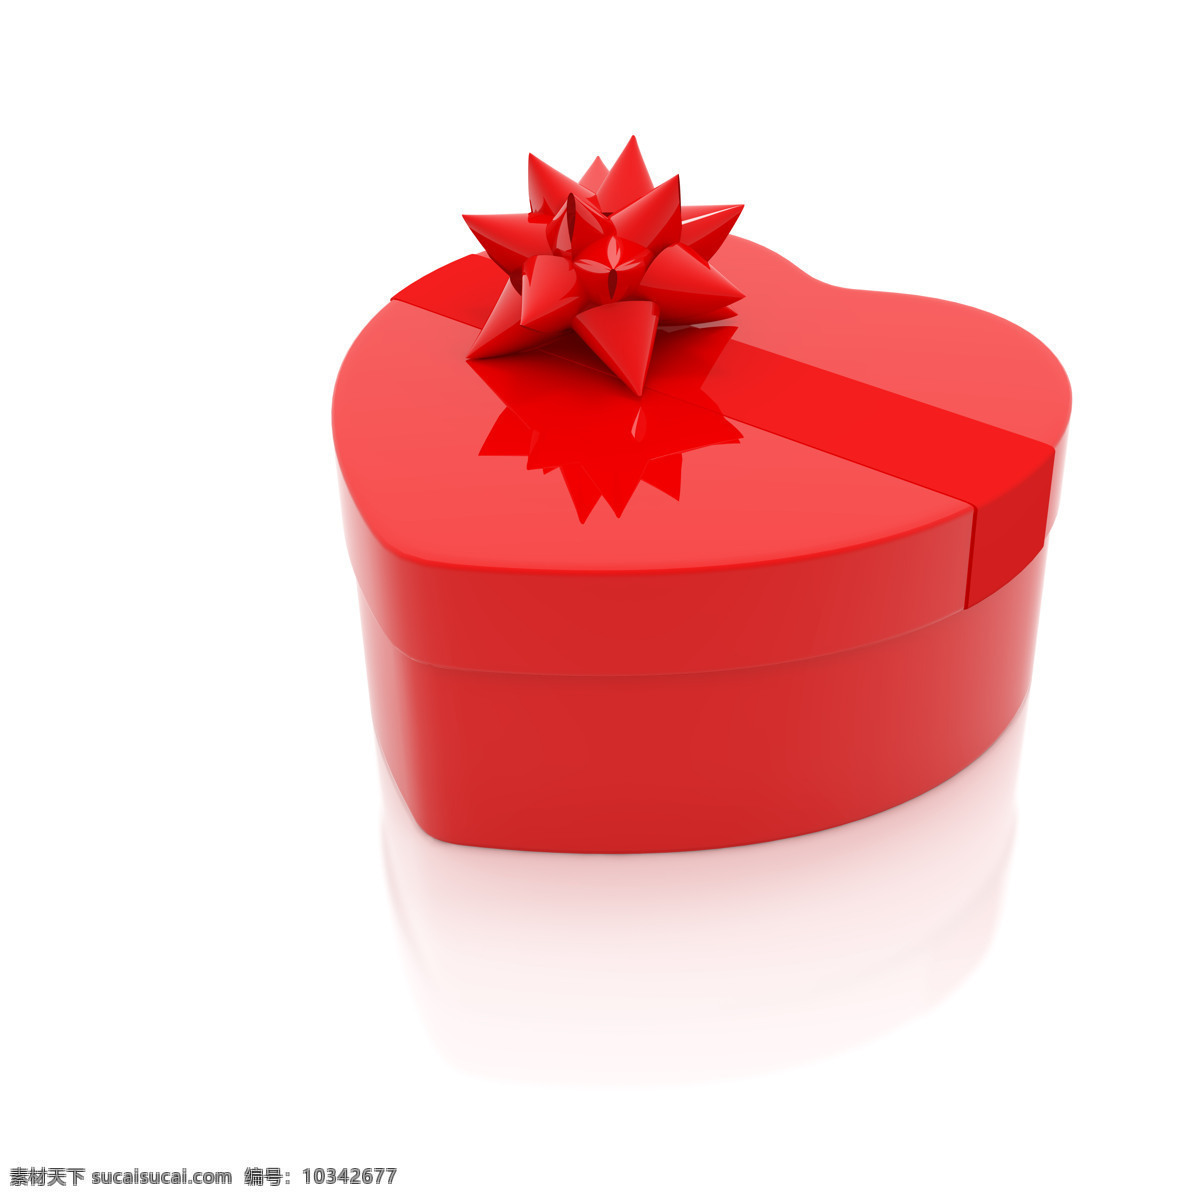 心形 礼物 盒 心形礼物盒 礼物盒 红色 情人节 爱情 丝带 礼品包装 3d作品 3d设计 其他类别 生活百科